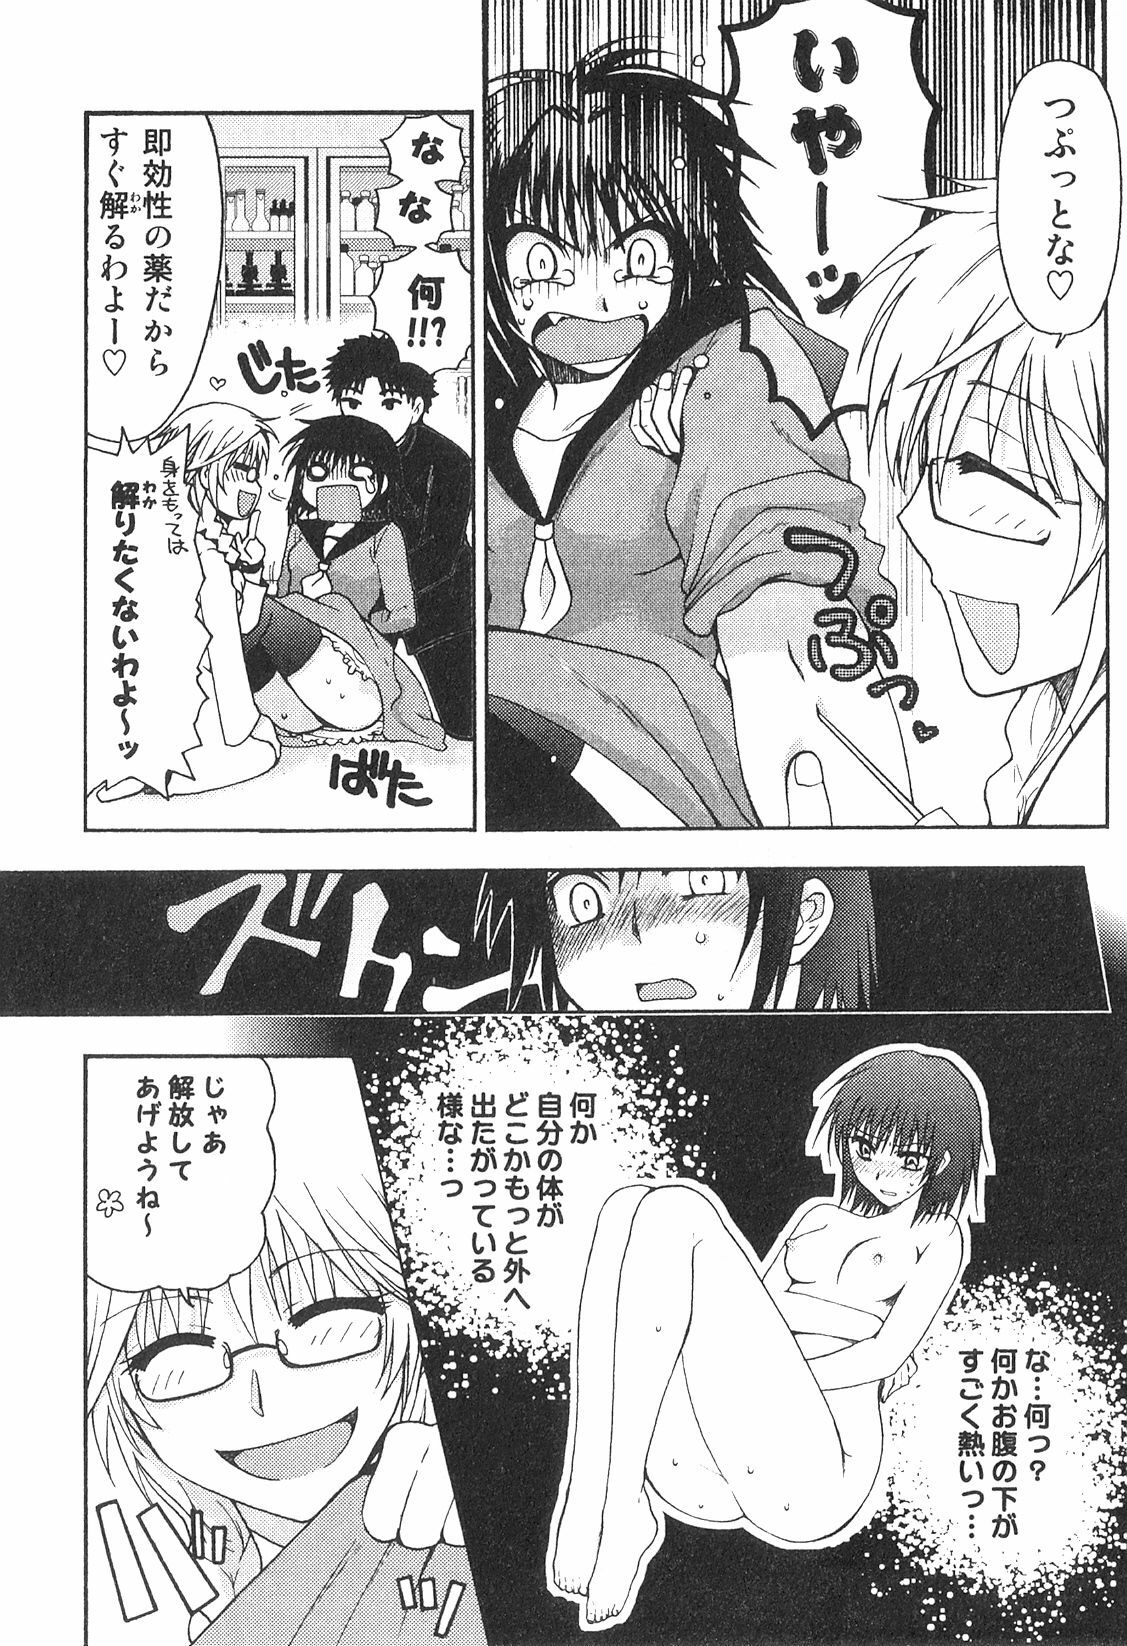 [Anthology] Futanarikko High! page 43 full